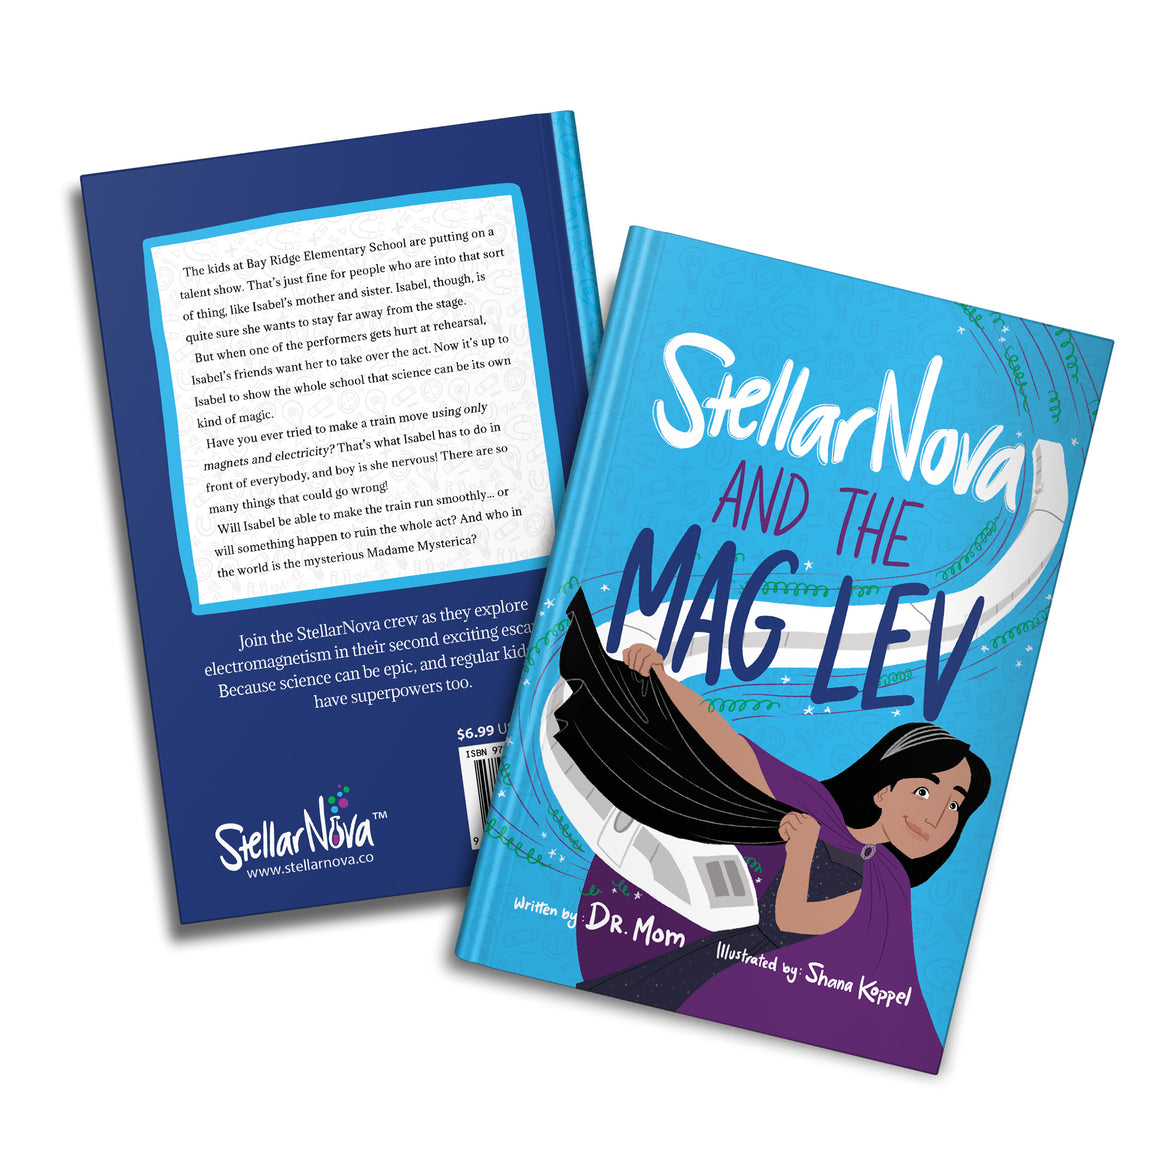 Book 2: StellarNova and the MagLev